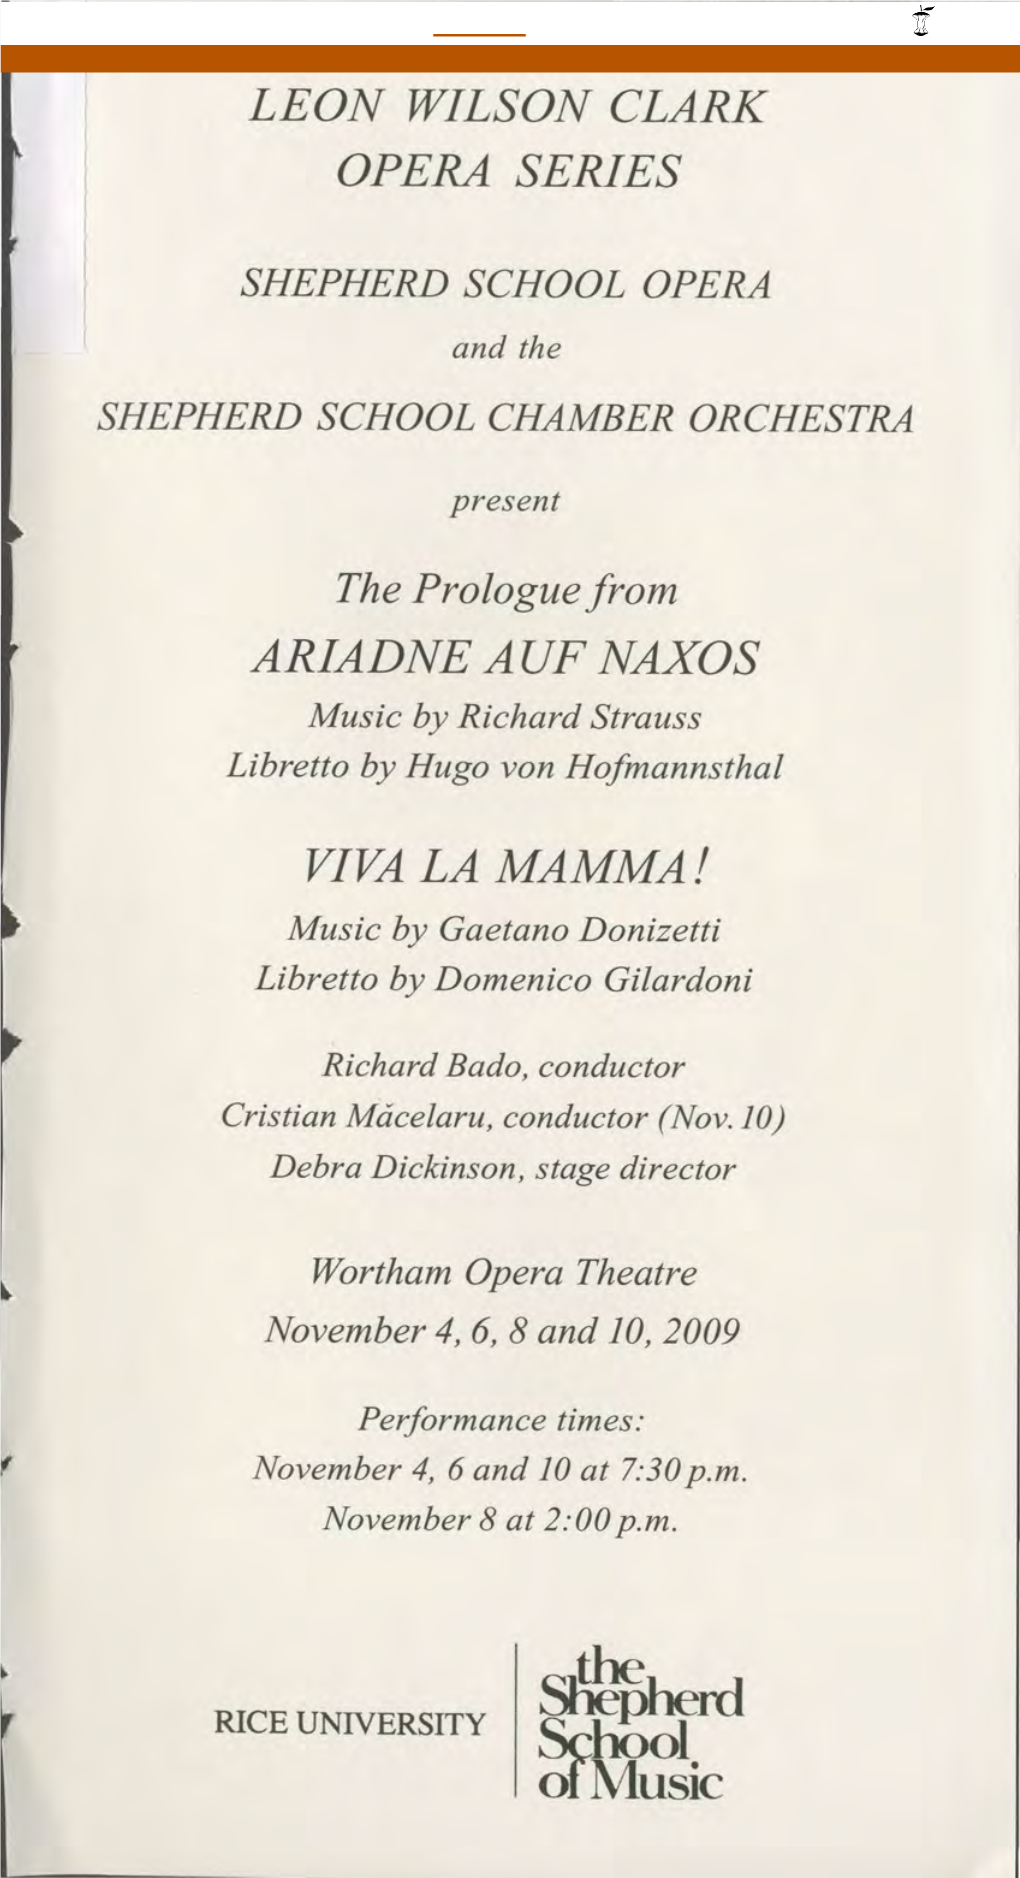 The Prologue from ARIADNE AUF NAXOS Music by Richard Strauss Libretto by Hugo Von Hofmannsthal